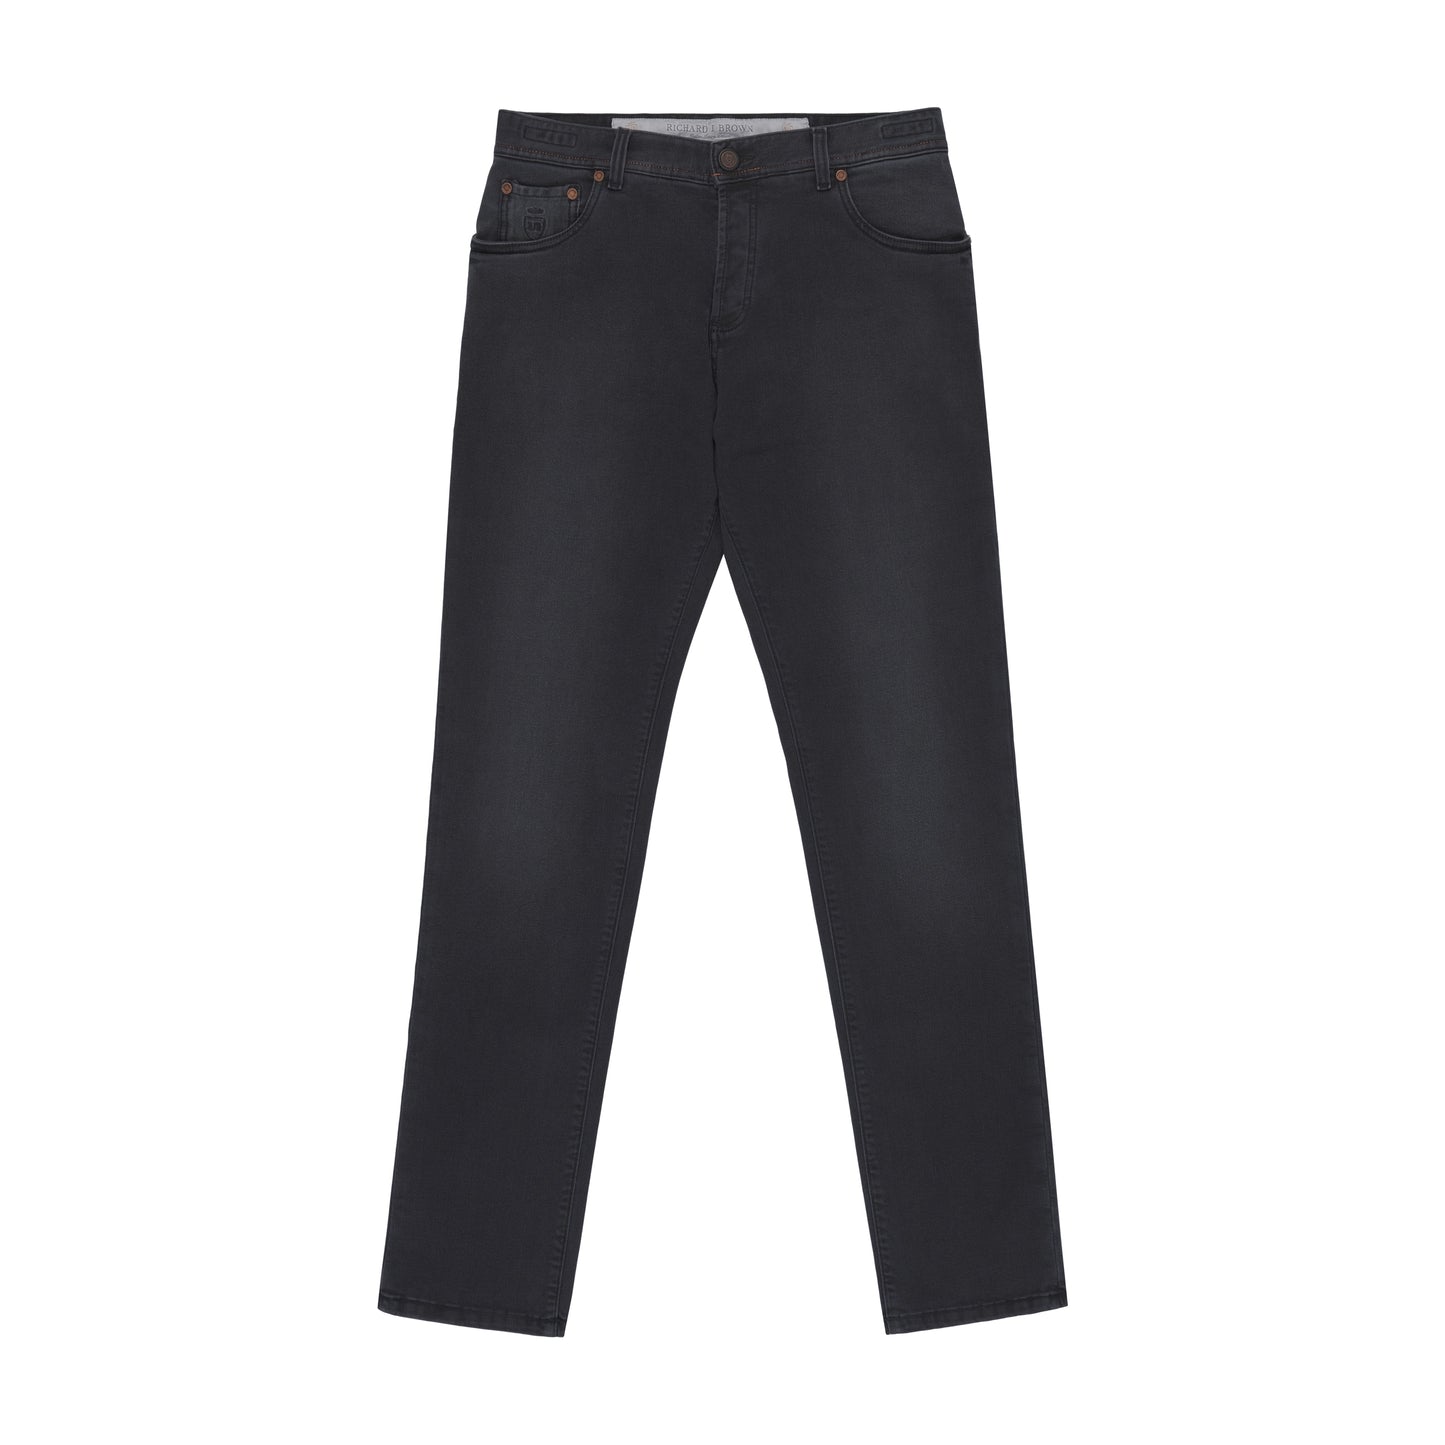 Stretch-Cotton Jeans in Dark Grey with Button Fastening